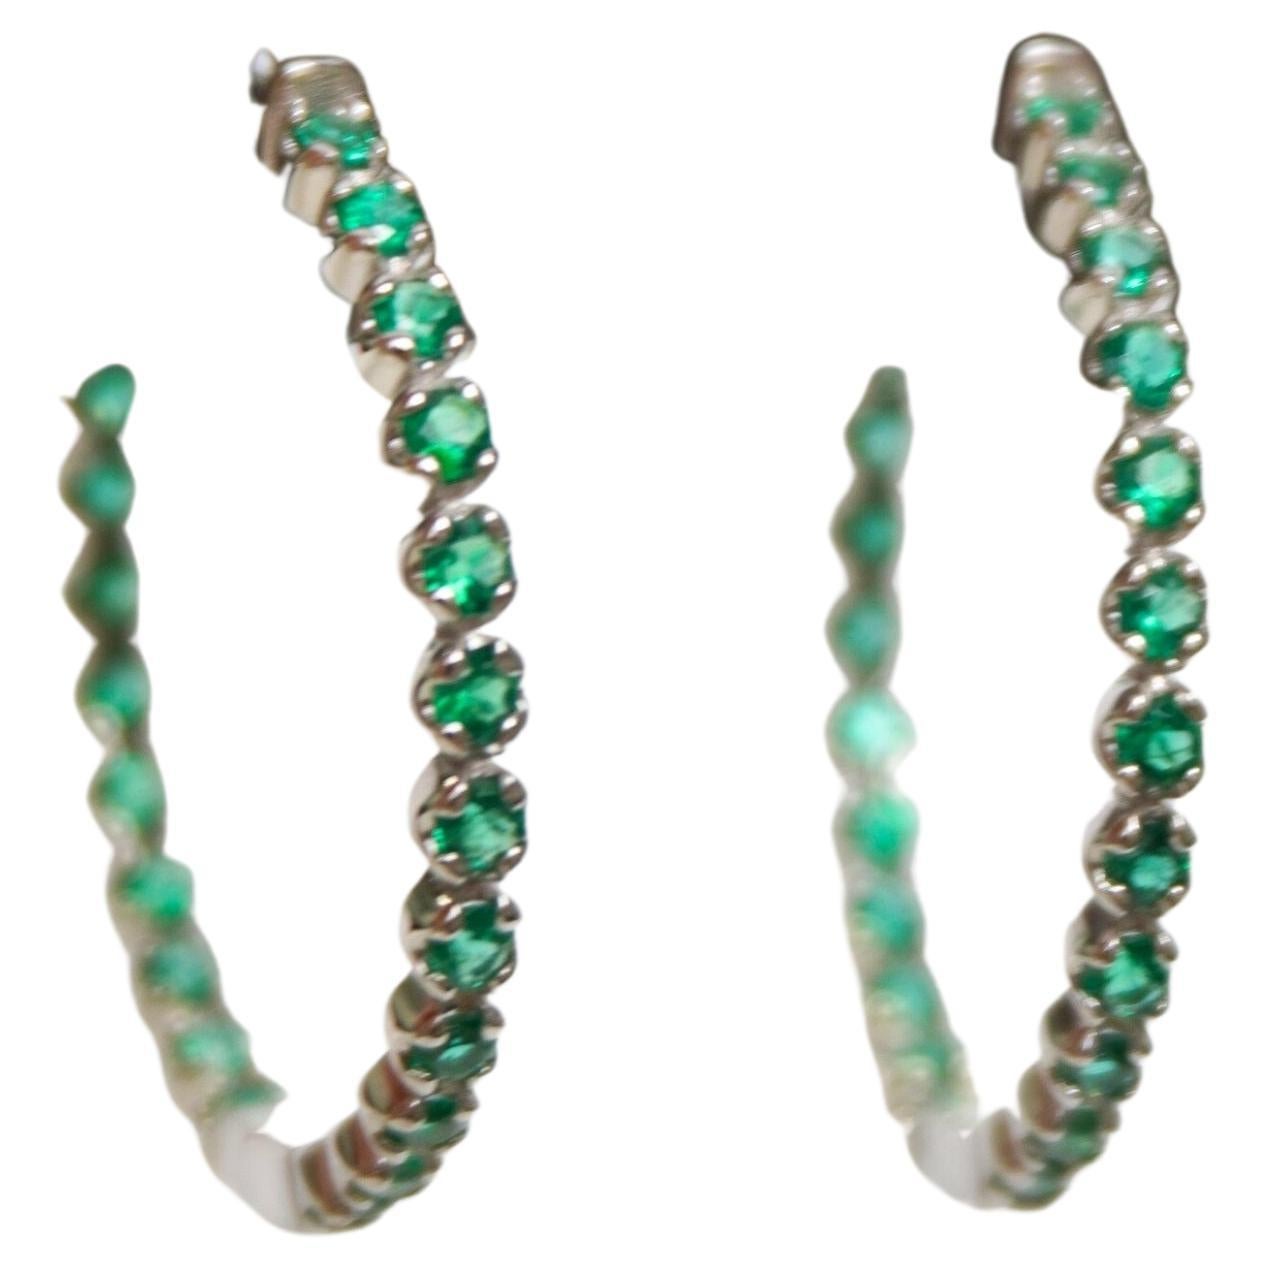 1.6 Carat Emerald Hoop Earrings